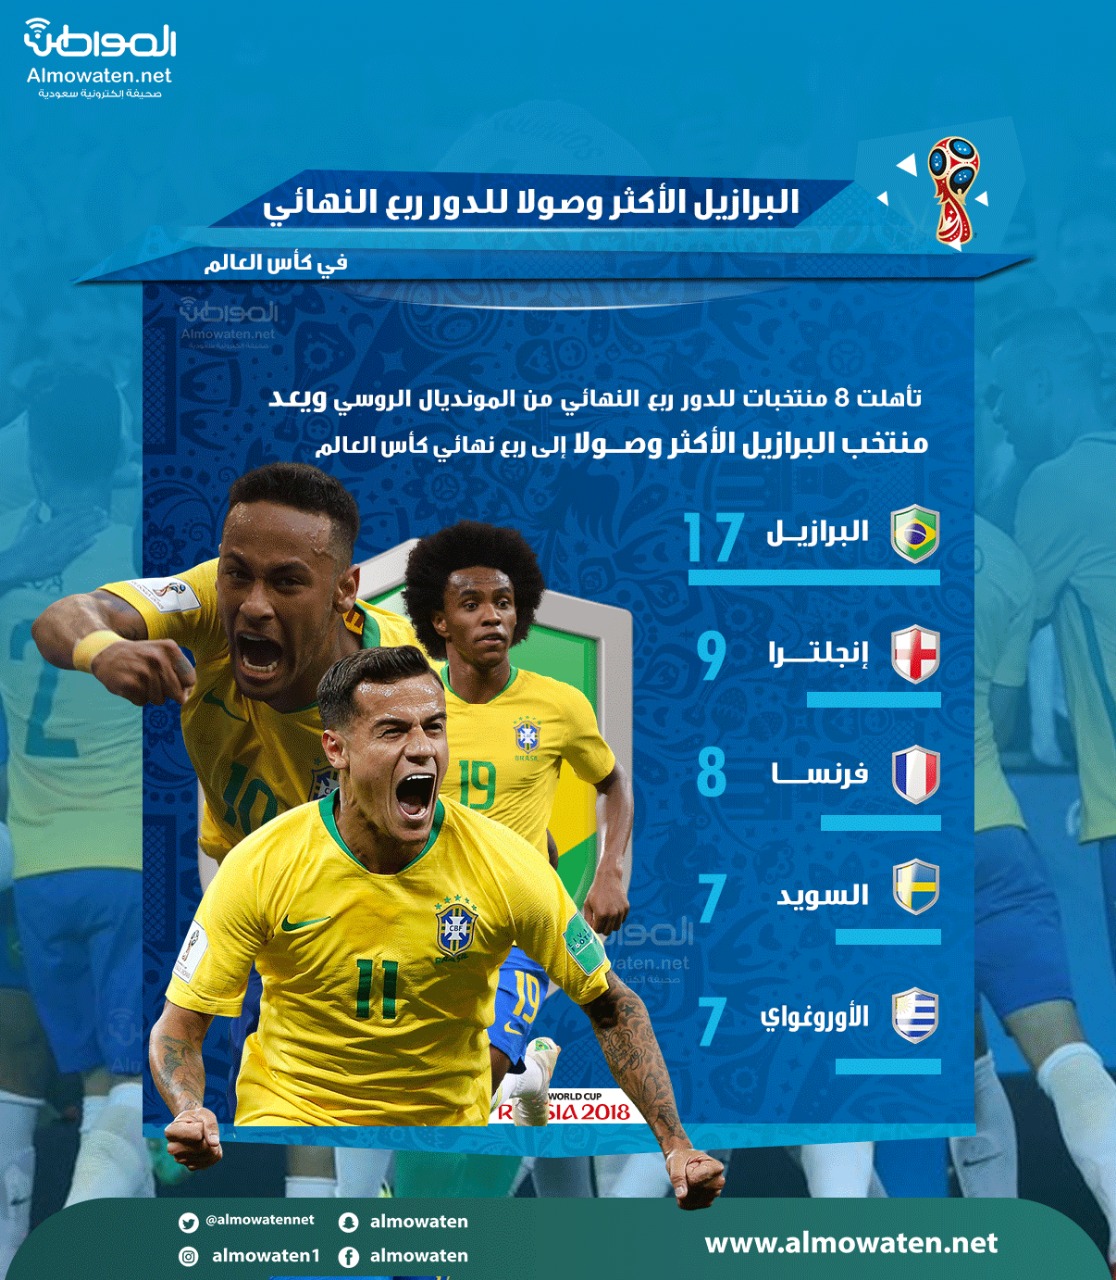 البرازيل الأكثر وصولًا لربع النهائي في كأس العالم